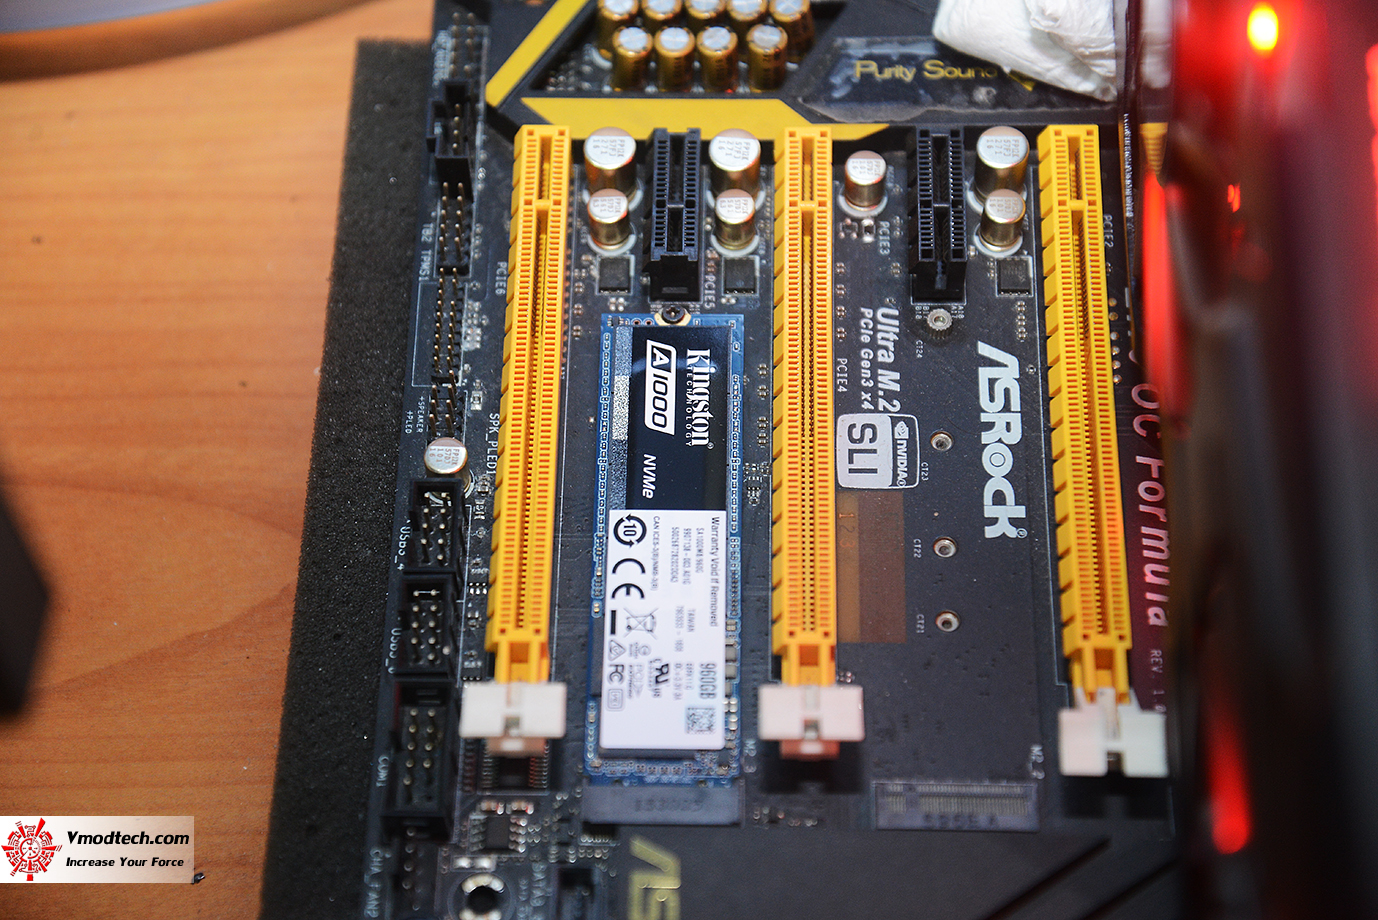 dsc 3262 KINGSTON A1000 NVMe PCIe SSD 960GB Review